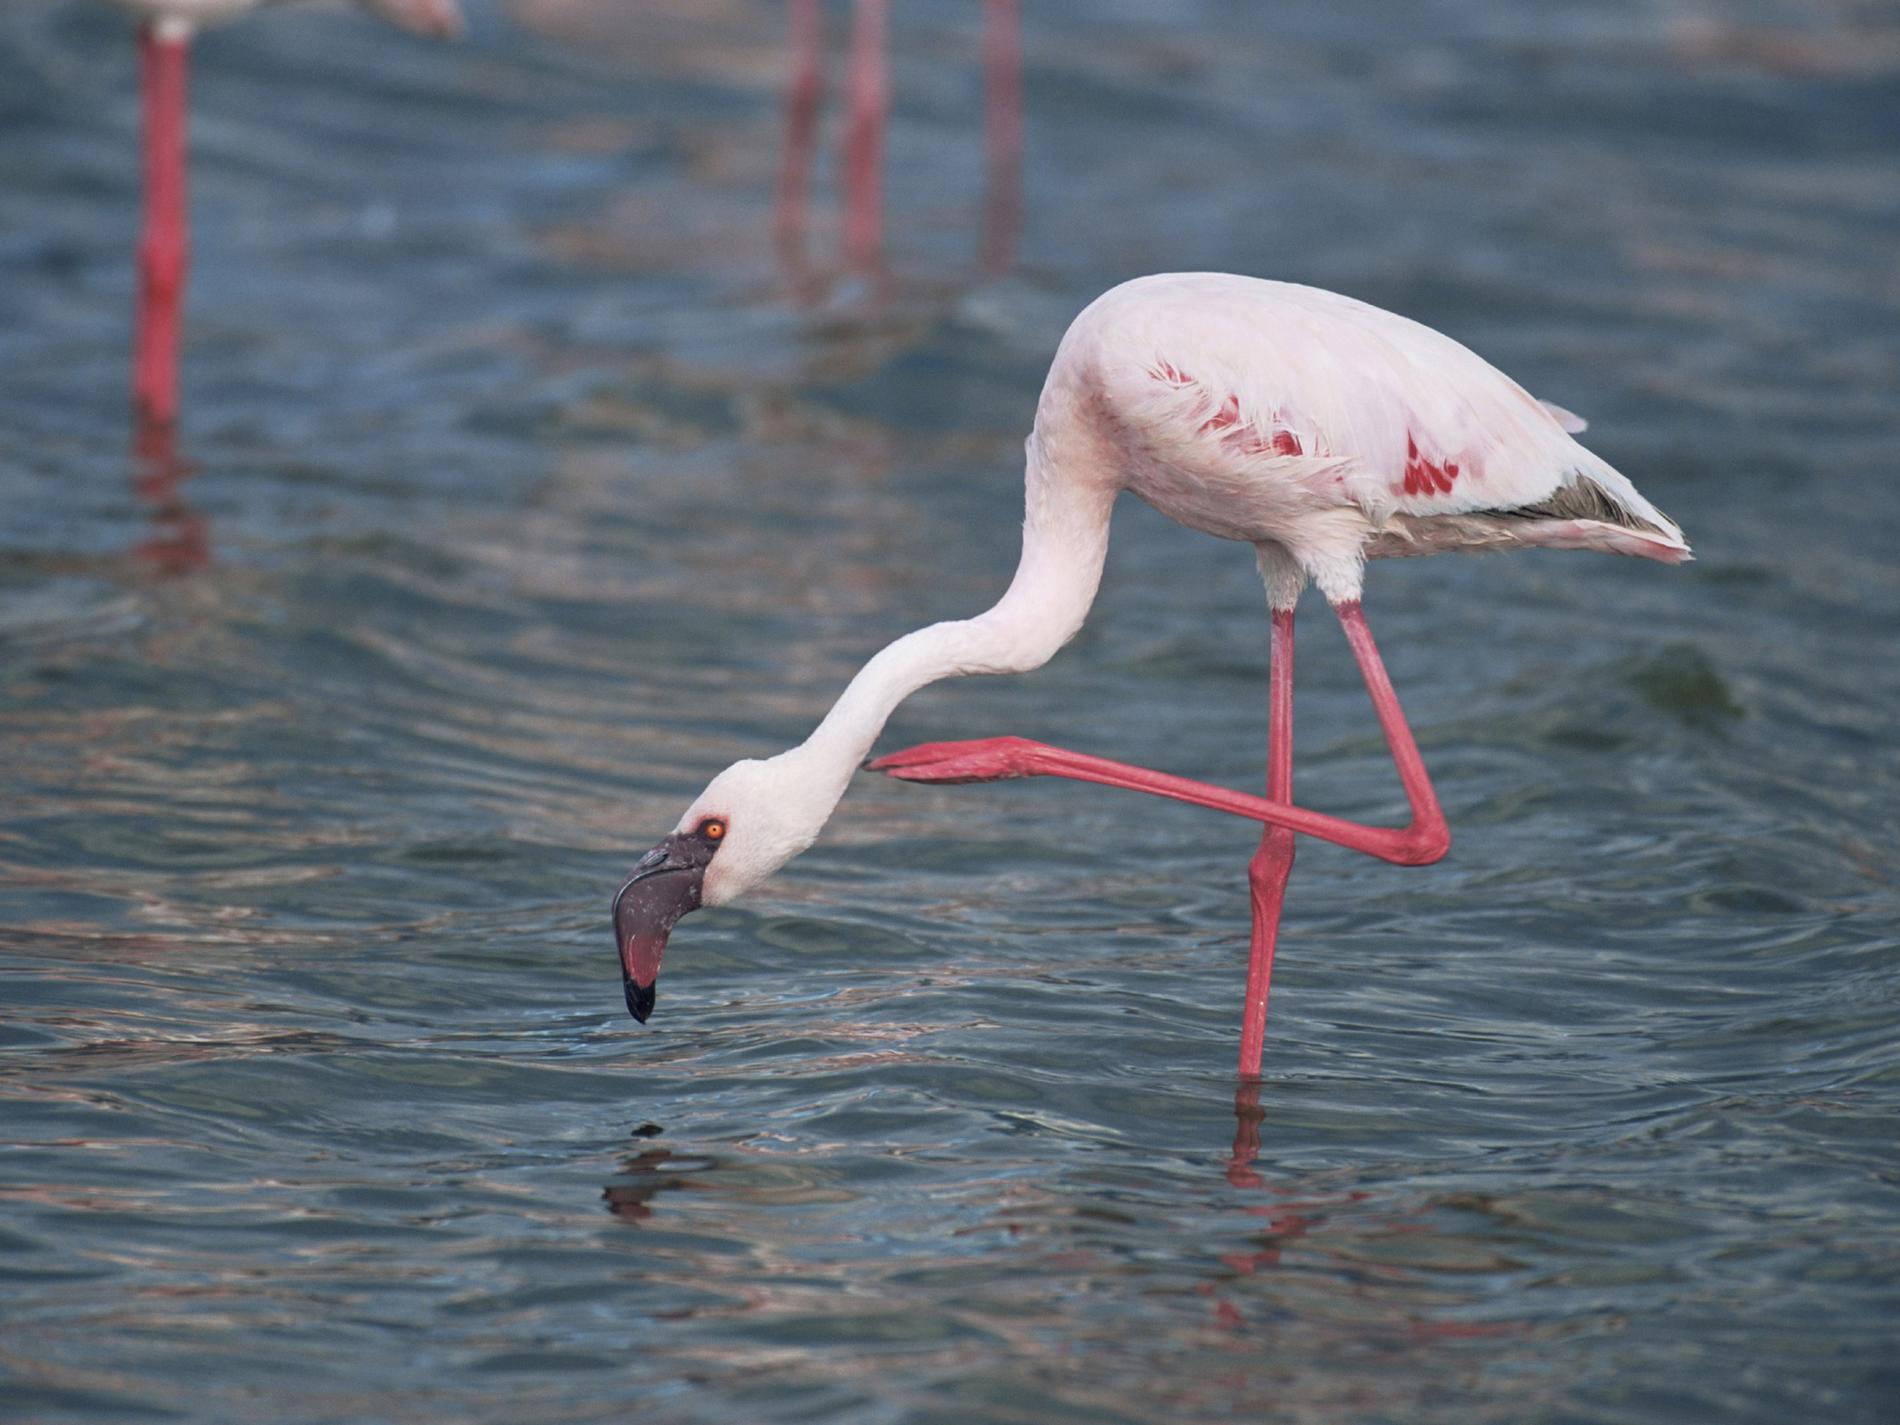 Ikonisk flamingo får svårare att hitta mat